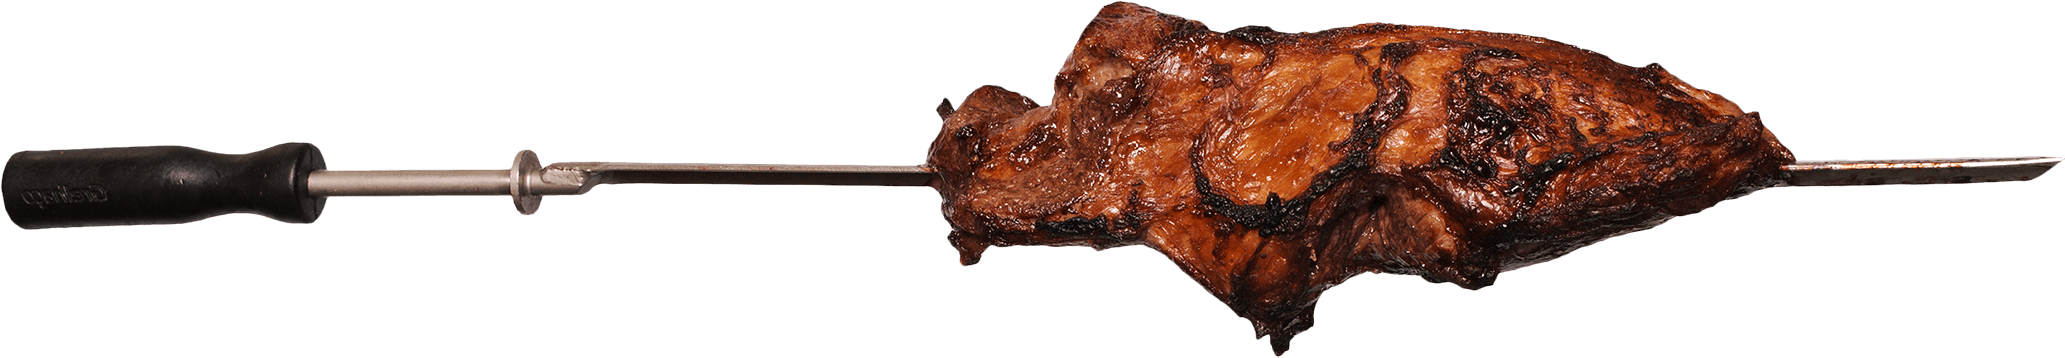 Maminha - Sirloin Steak (2120x357)